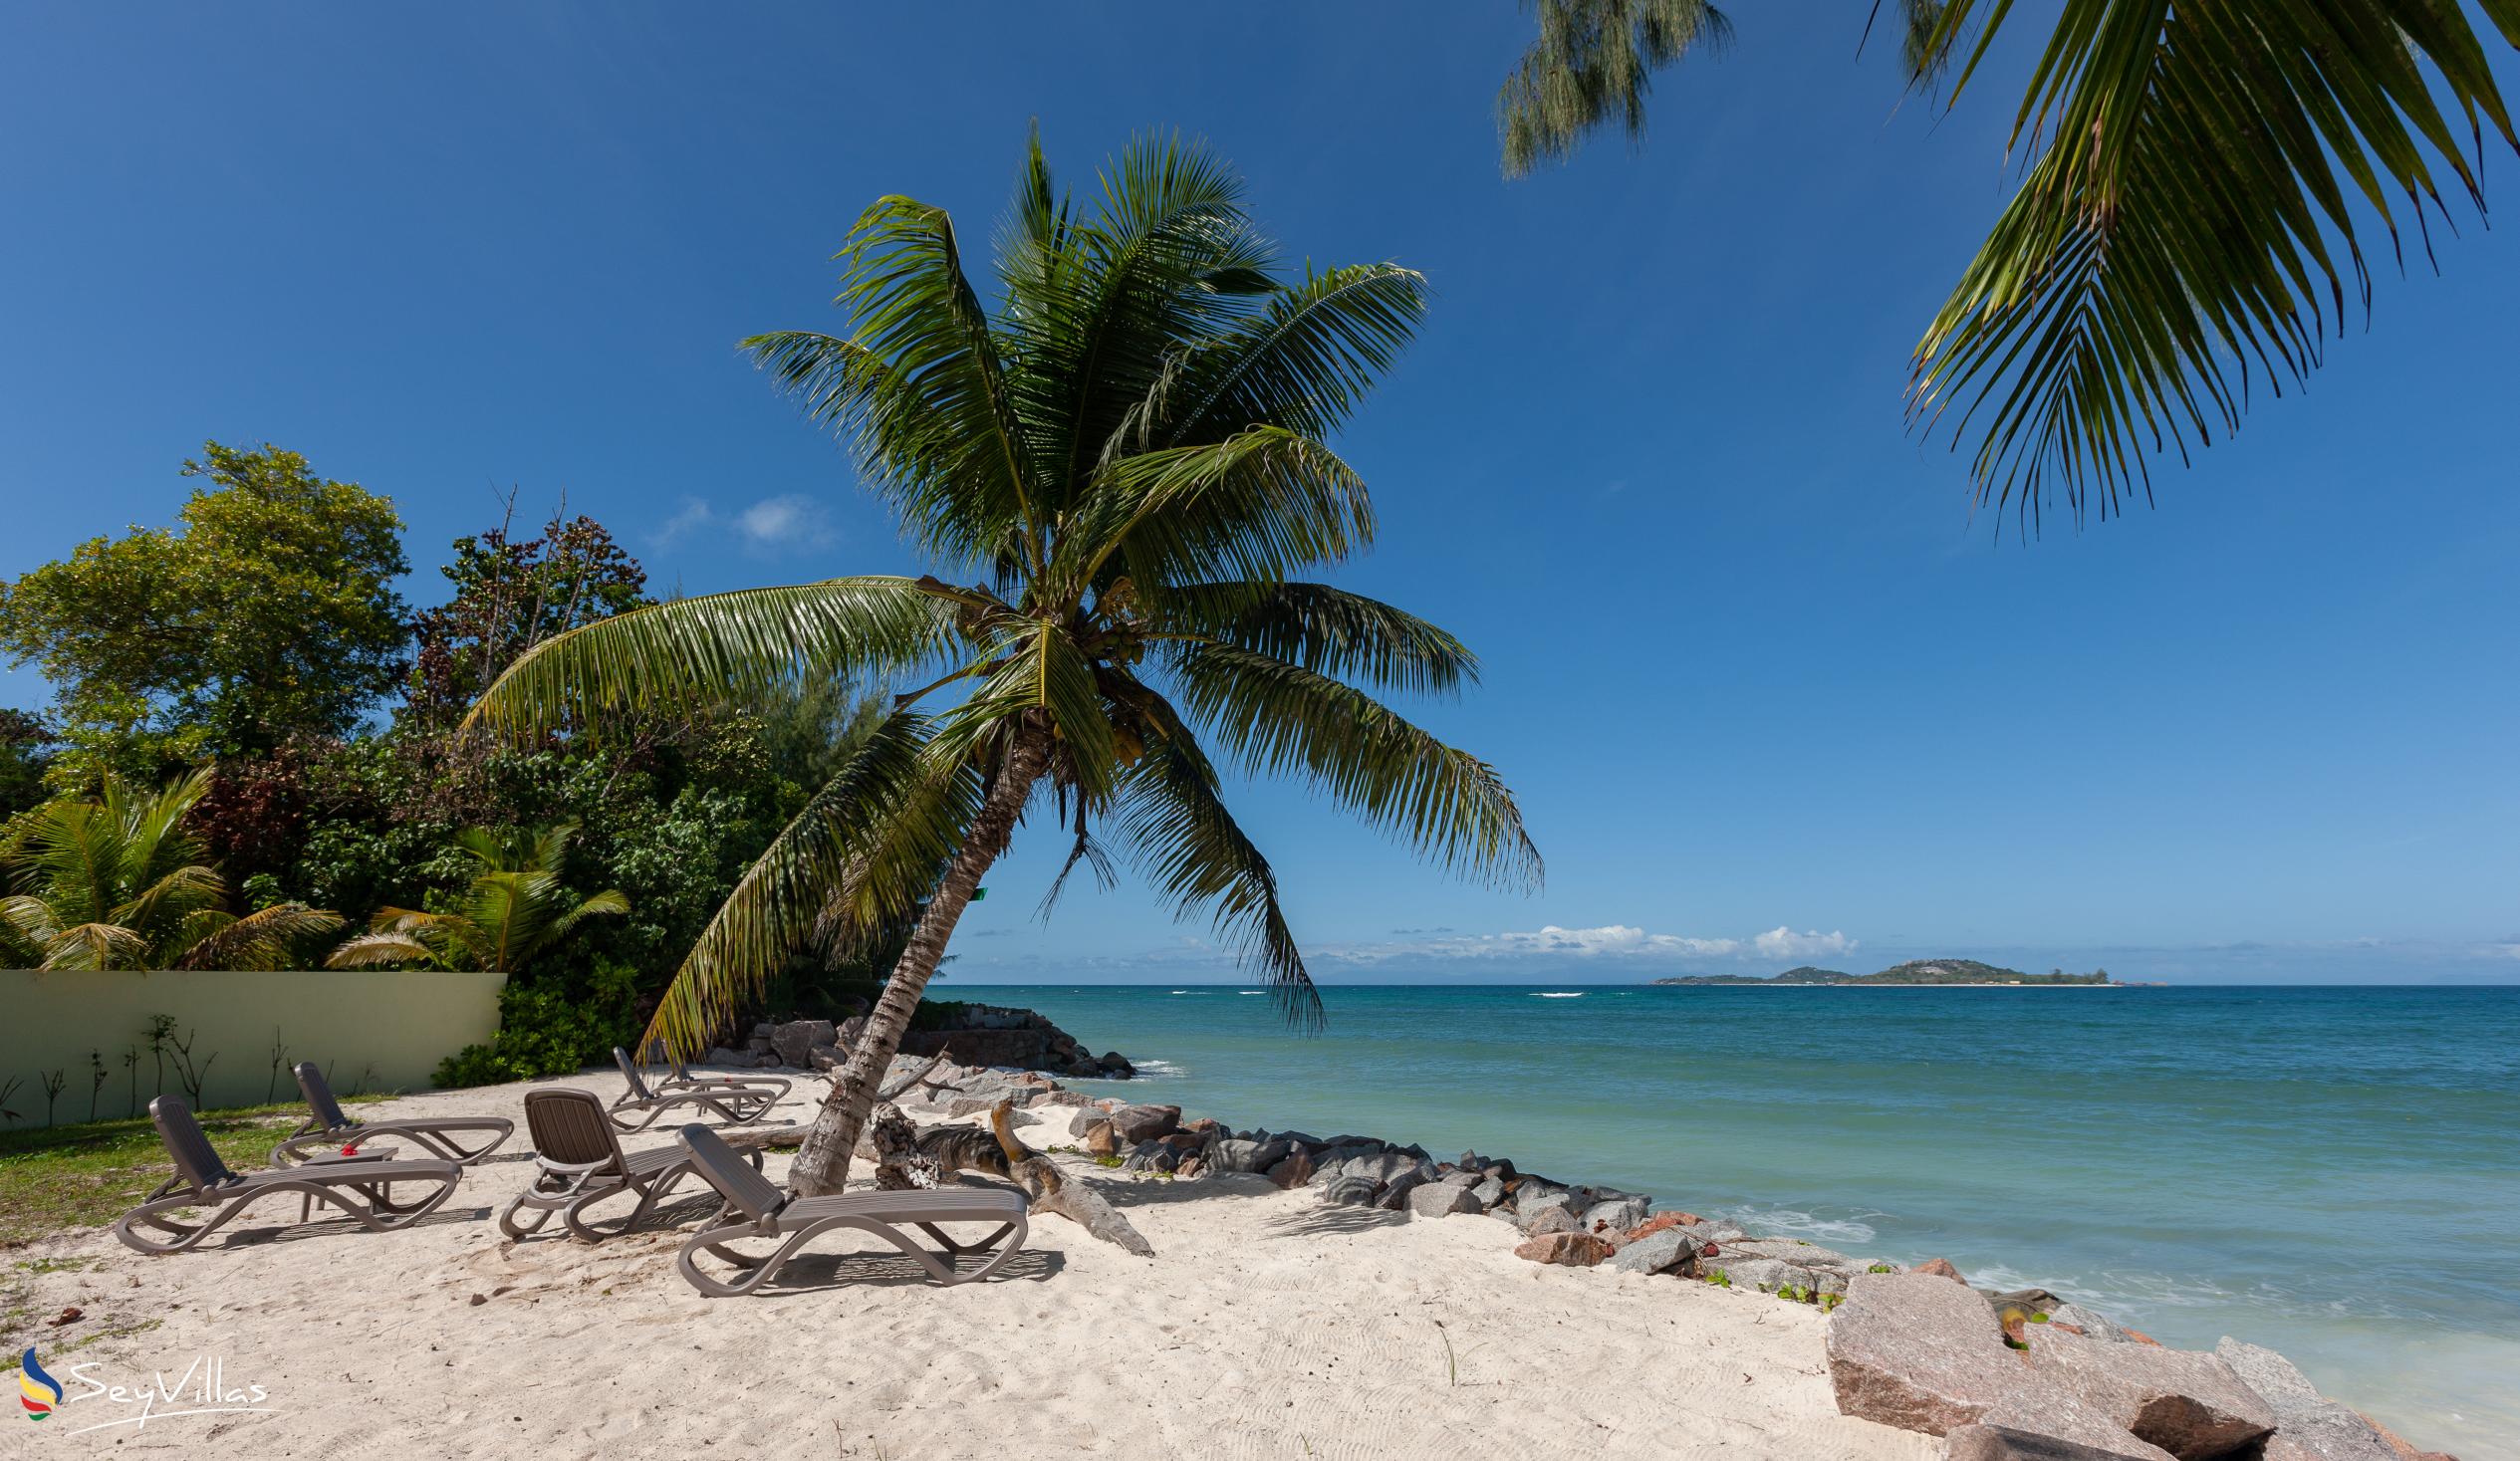 Foto 38: Villas Coco Beach - Posizione - Praslin (Seychelles)